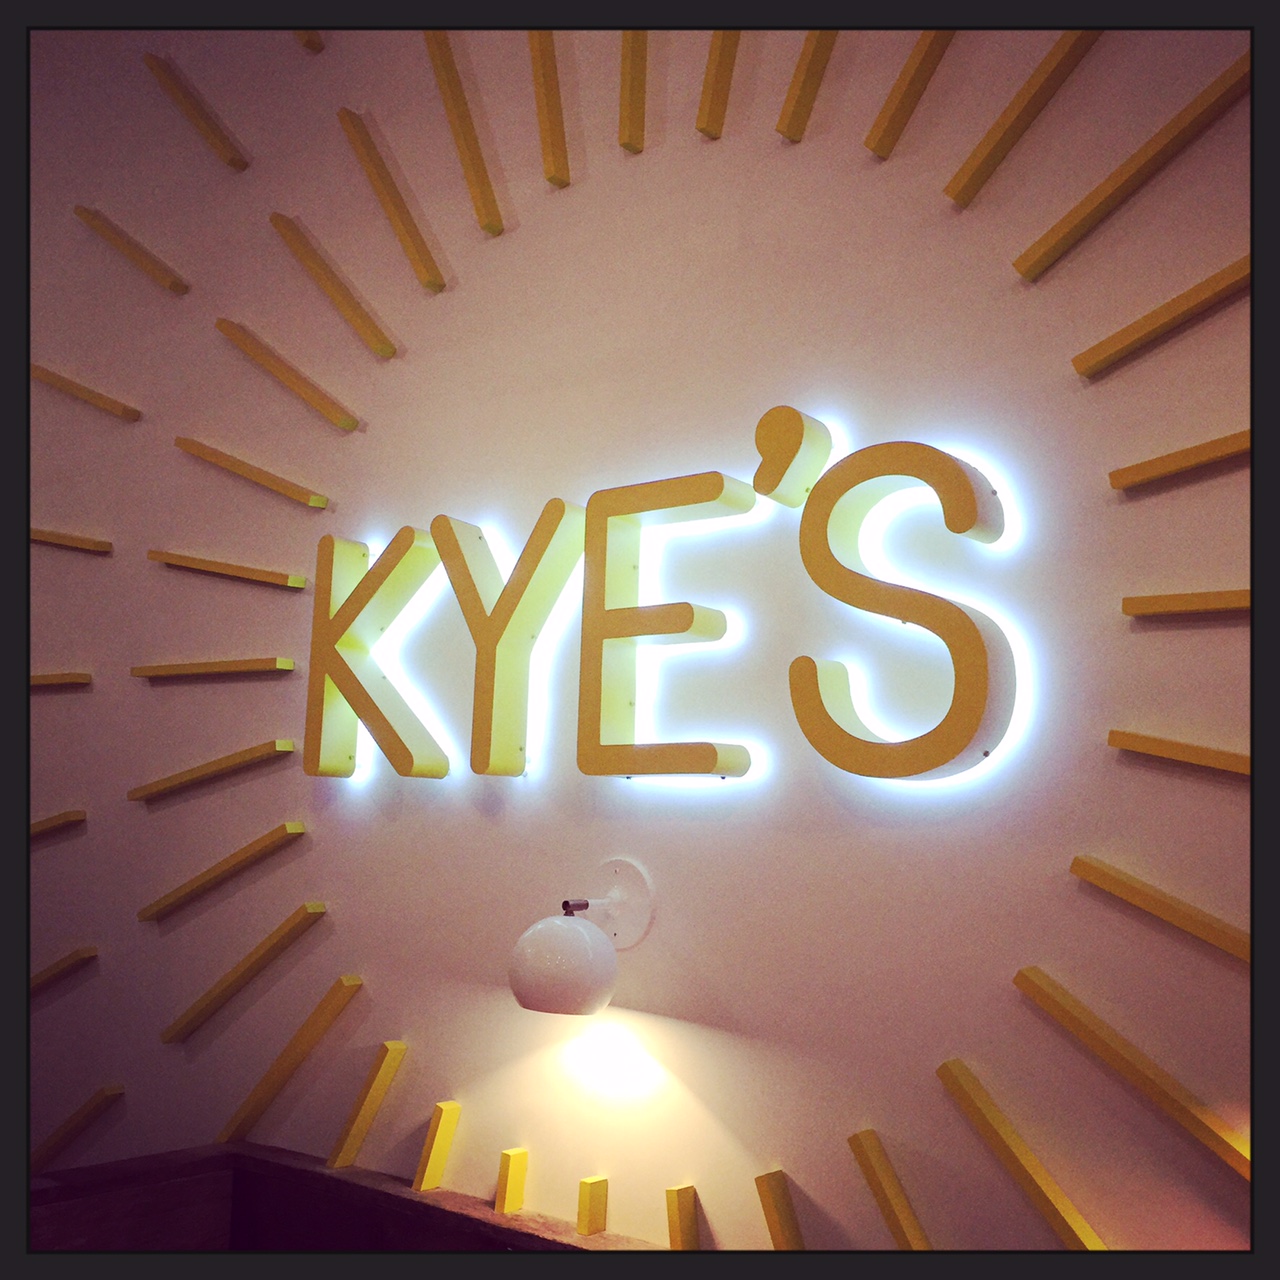 Kye’s